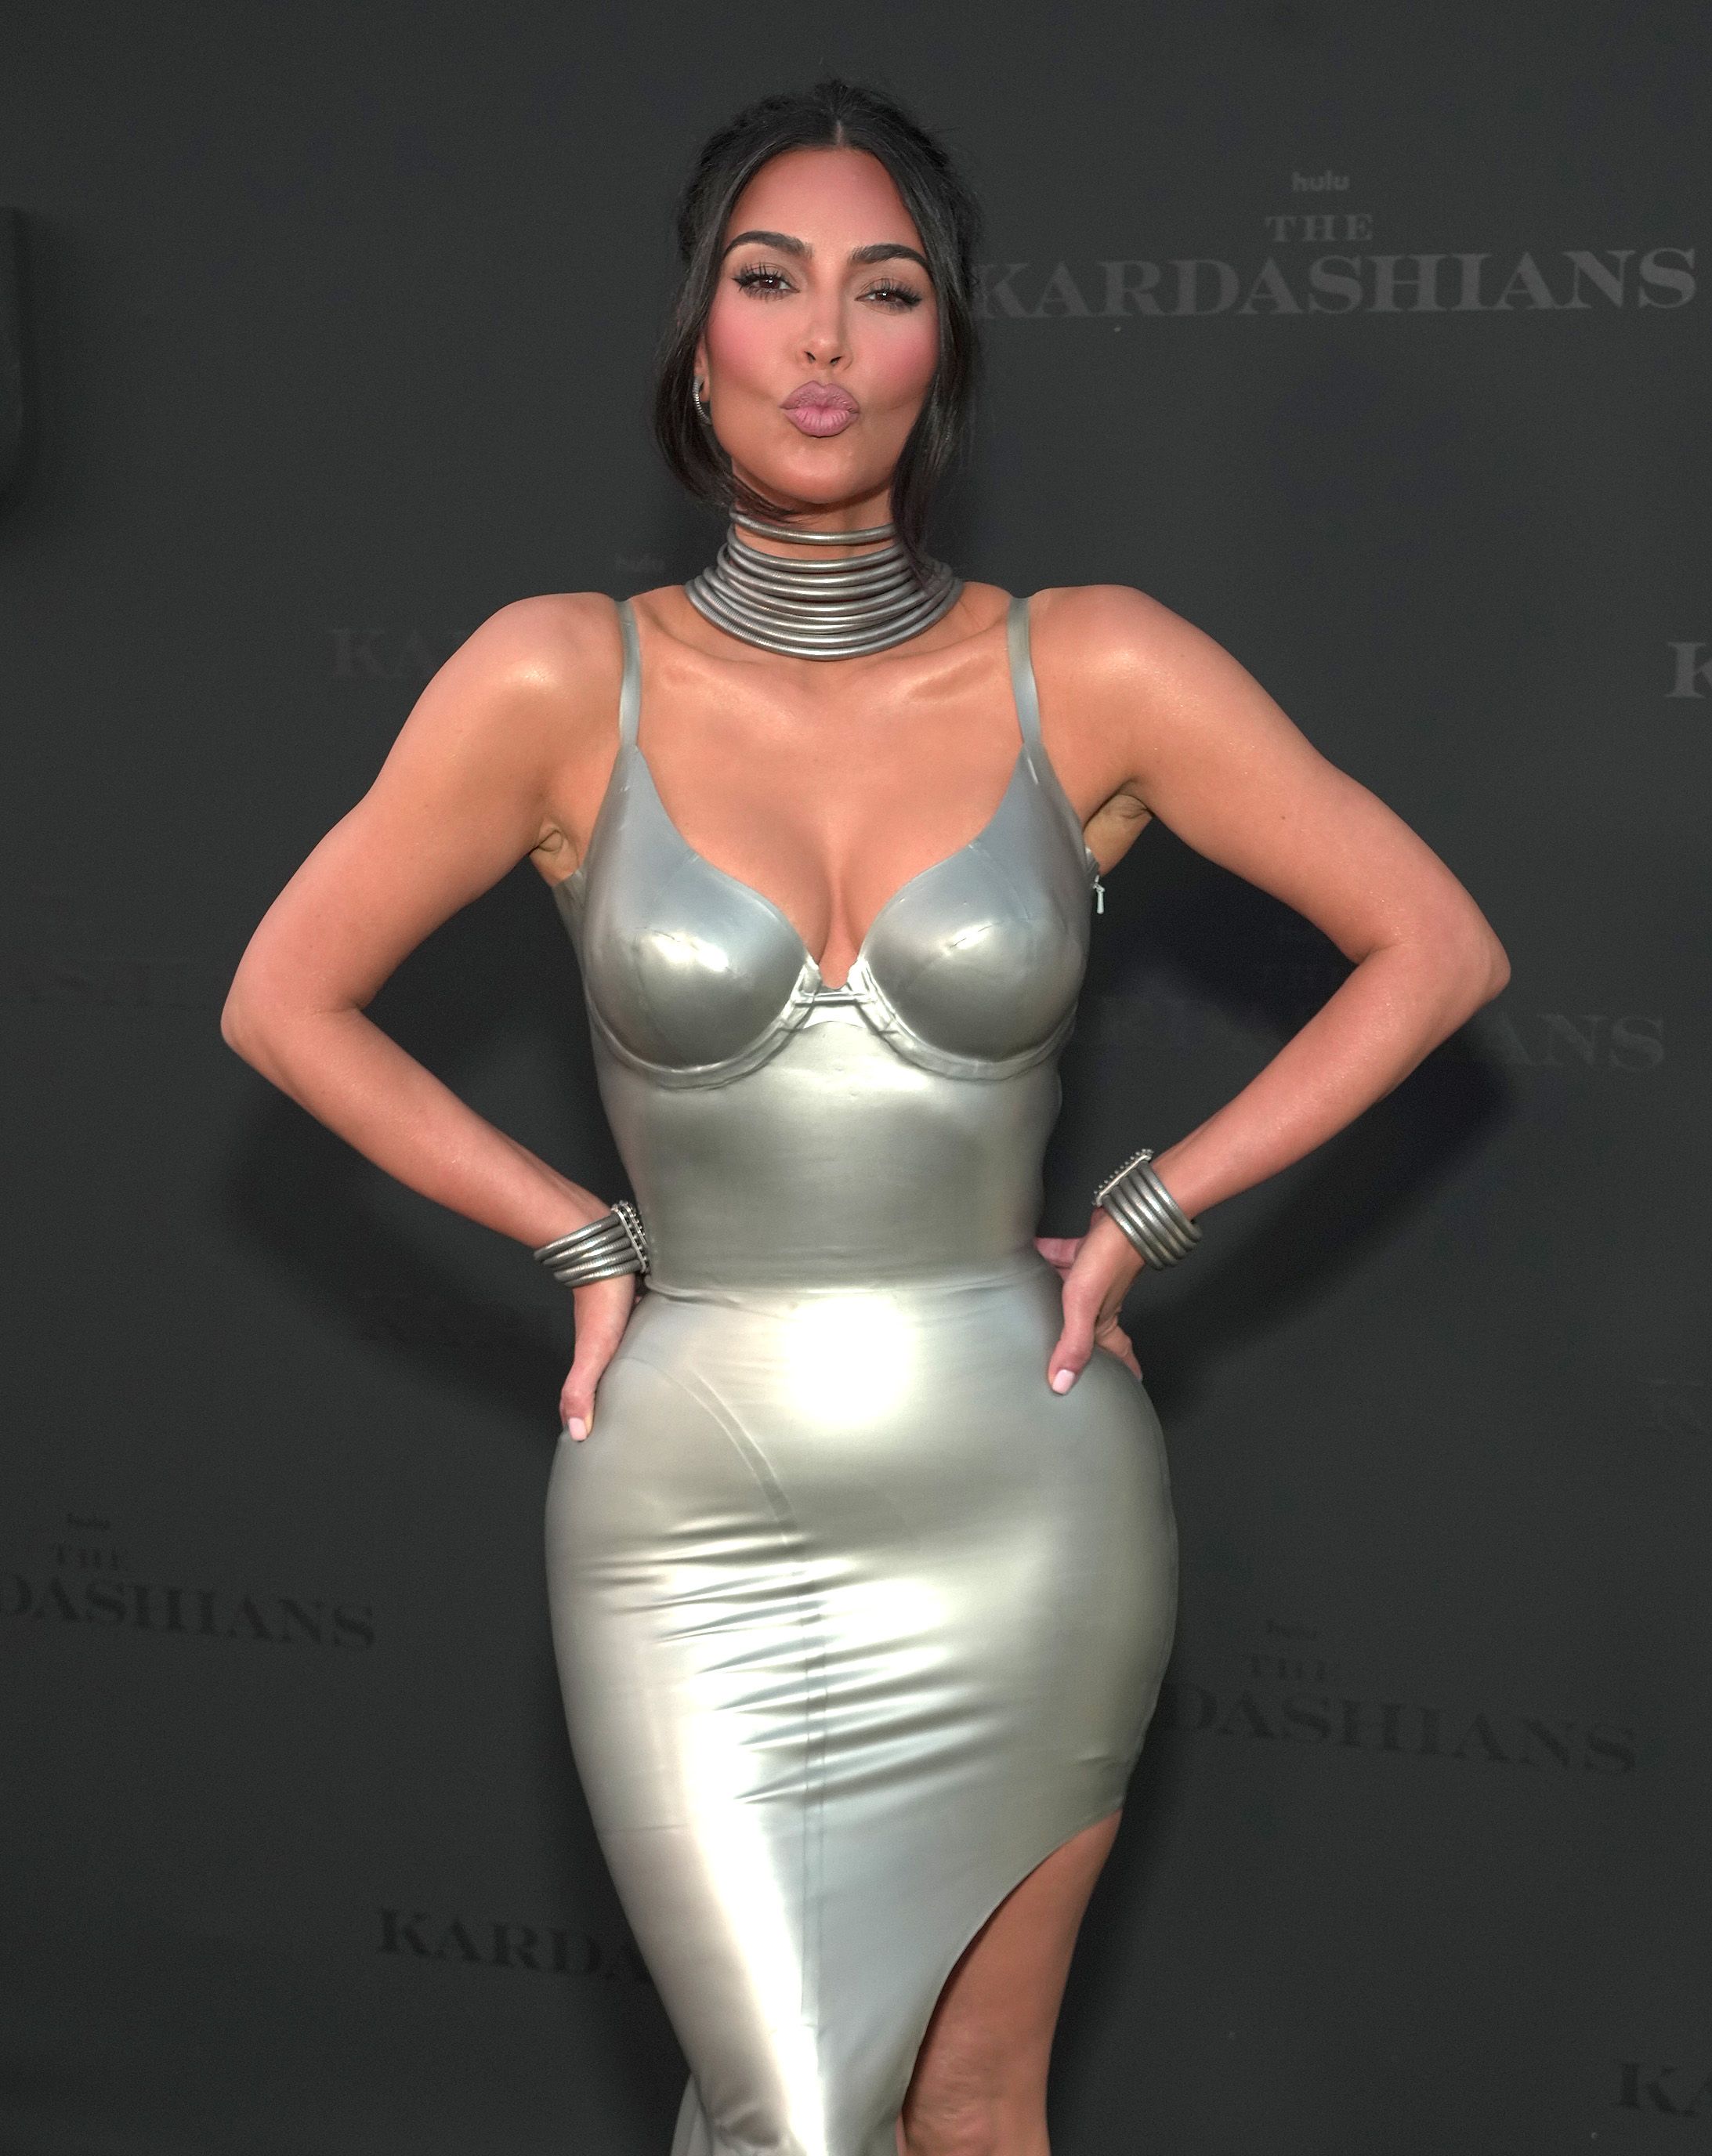 Kim Kardashian Free-Sex Video